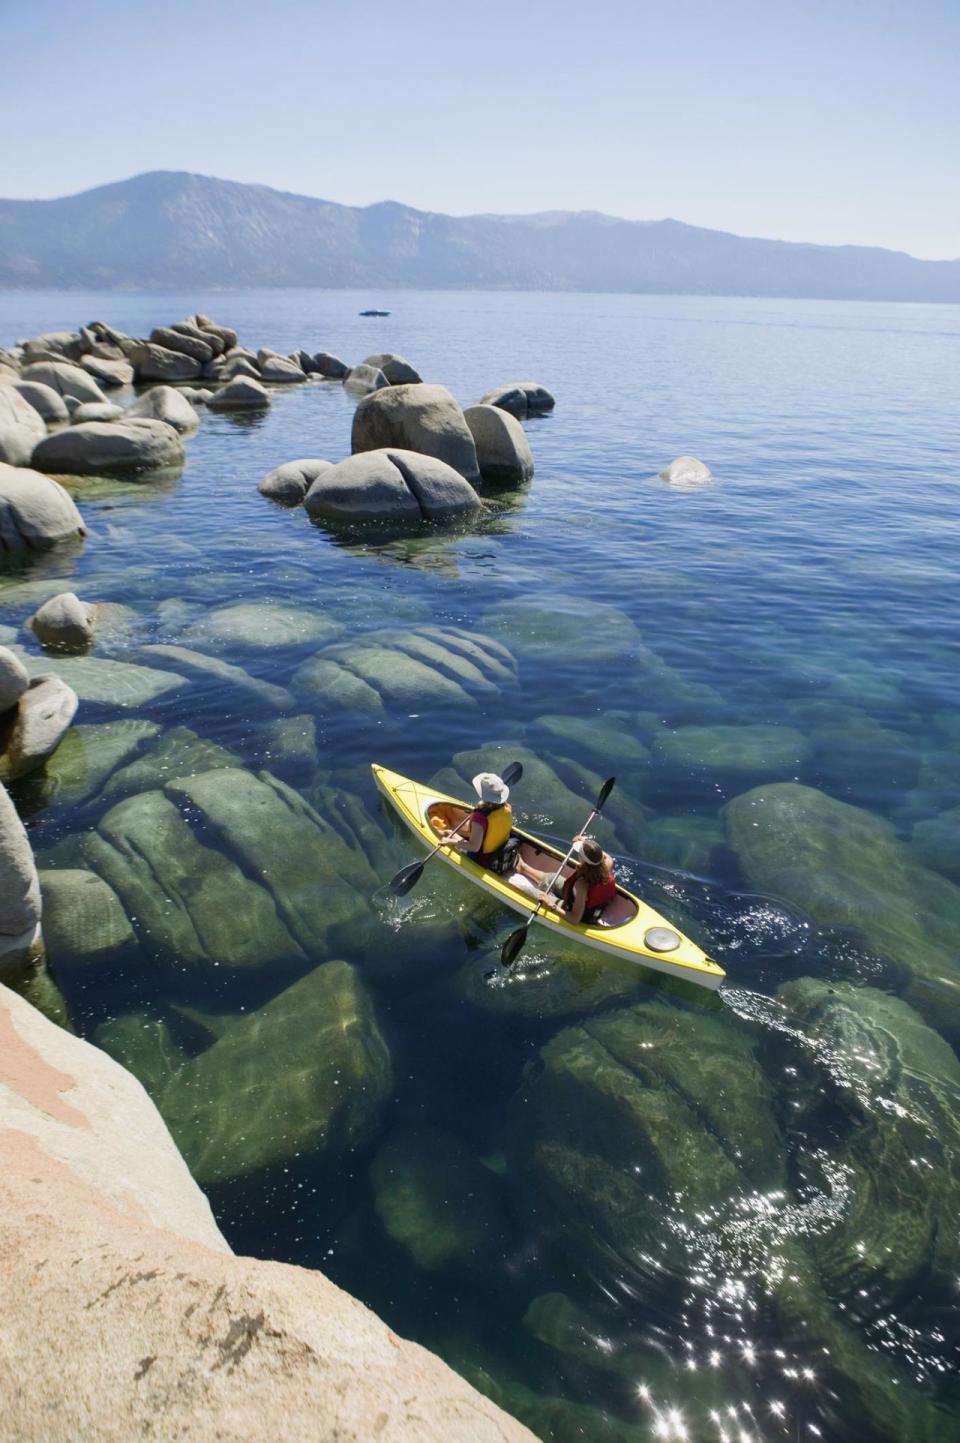 Lake Tahoe in California